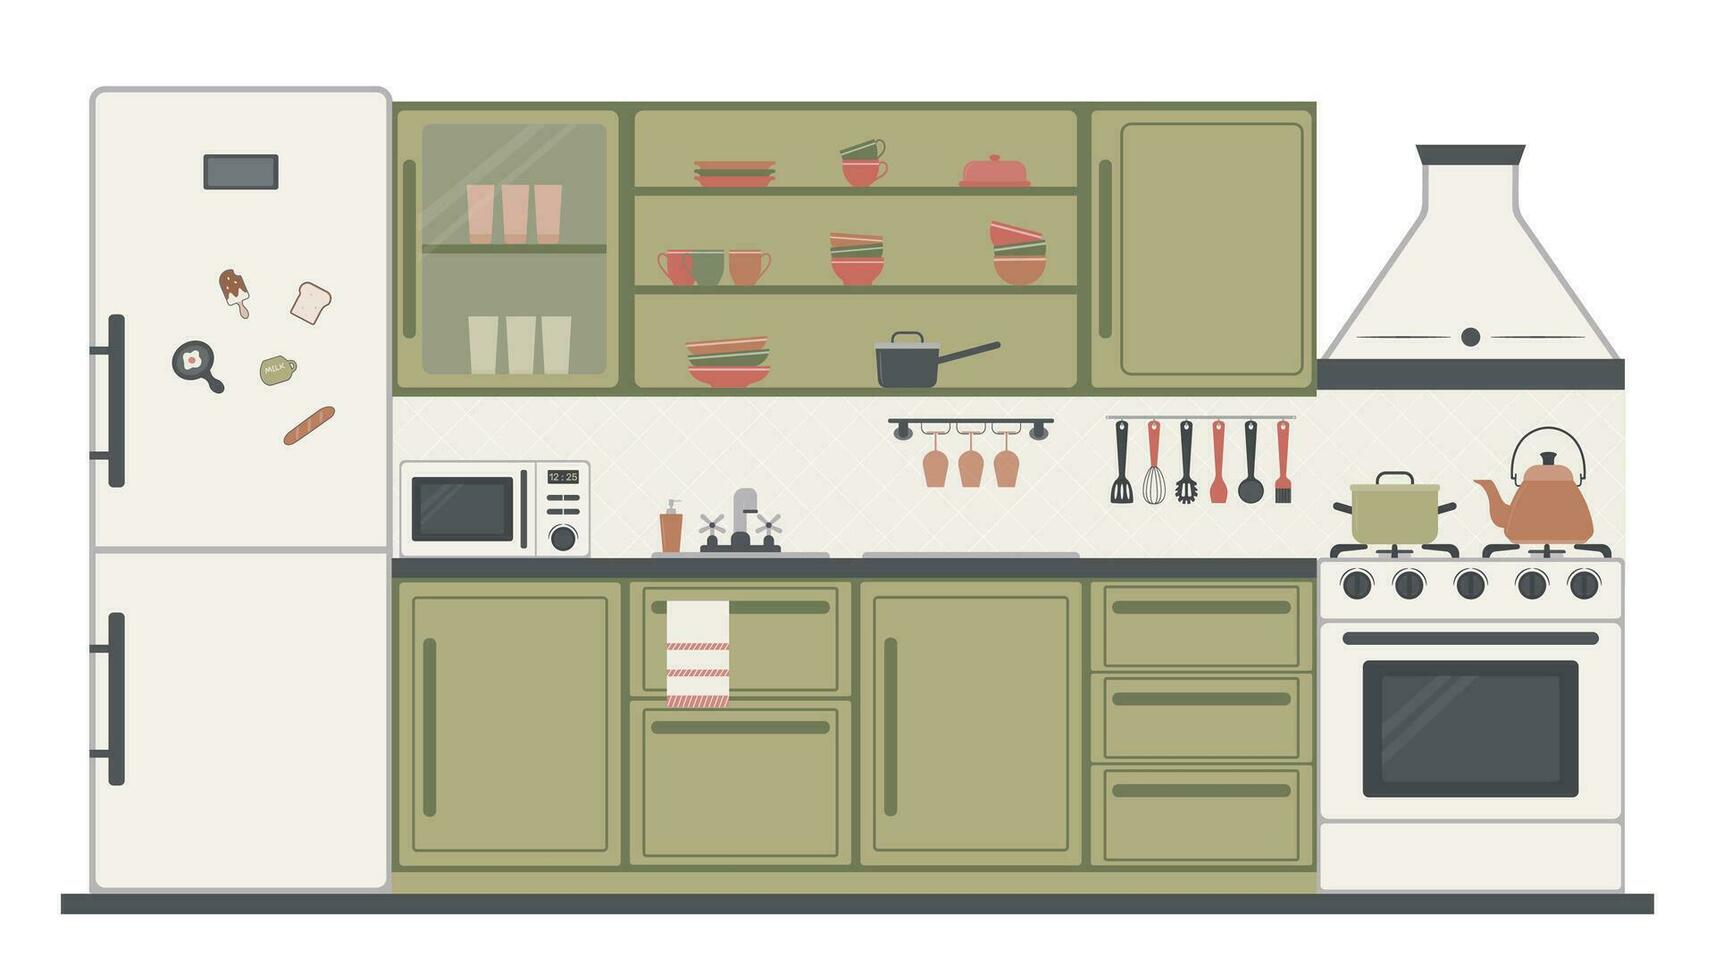 cucina interno design con arredamento, elettrodomestici e piatti. cucina armadietti, gas fornello, microonde, frigorifero con magneti, estrattore cappuccio. vettore illustrazione nel il piatto stile.